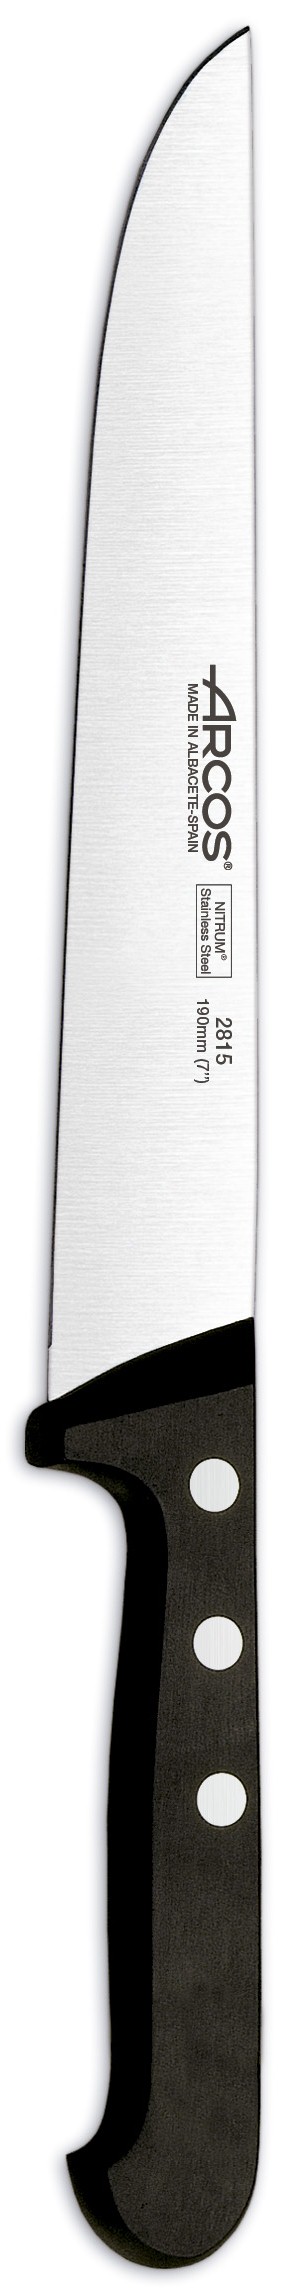 סכין מטבח ארקוס דגם 2815 - Arcos